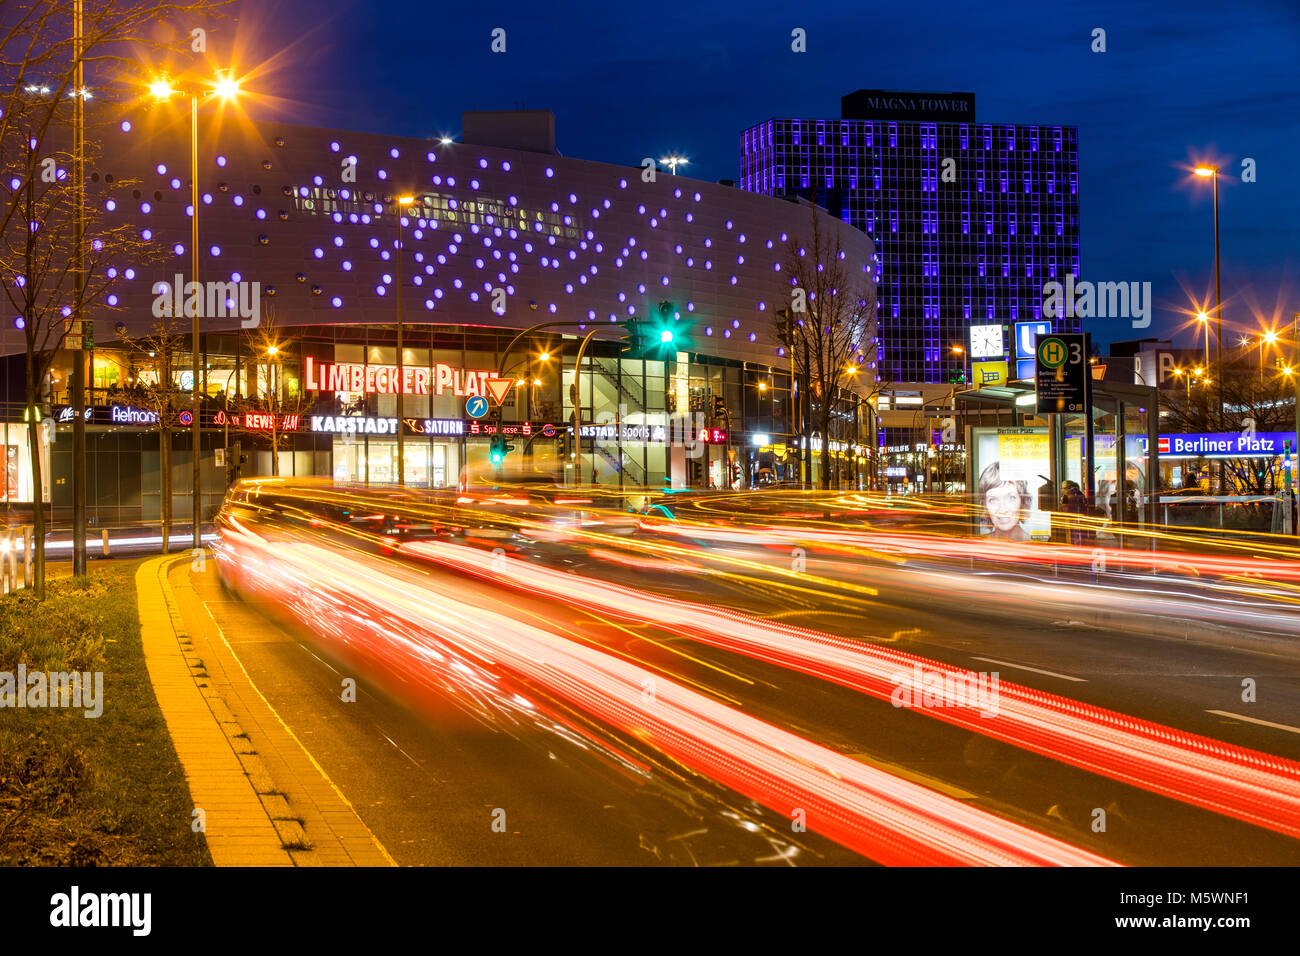 Berliner Platz, square, nel centro della città di Essen, Germania, piazza Limbecker Platz shopping centre, Magna Tower edificio per uffici, traffico di sera, Foto Stock